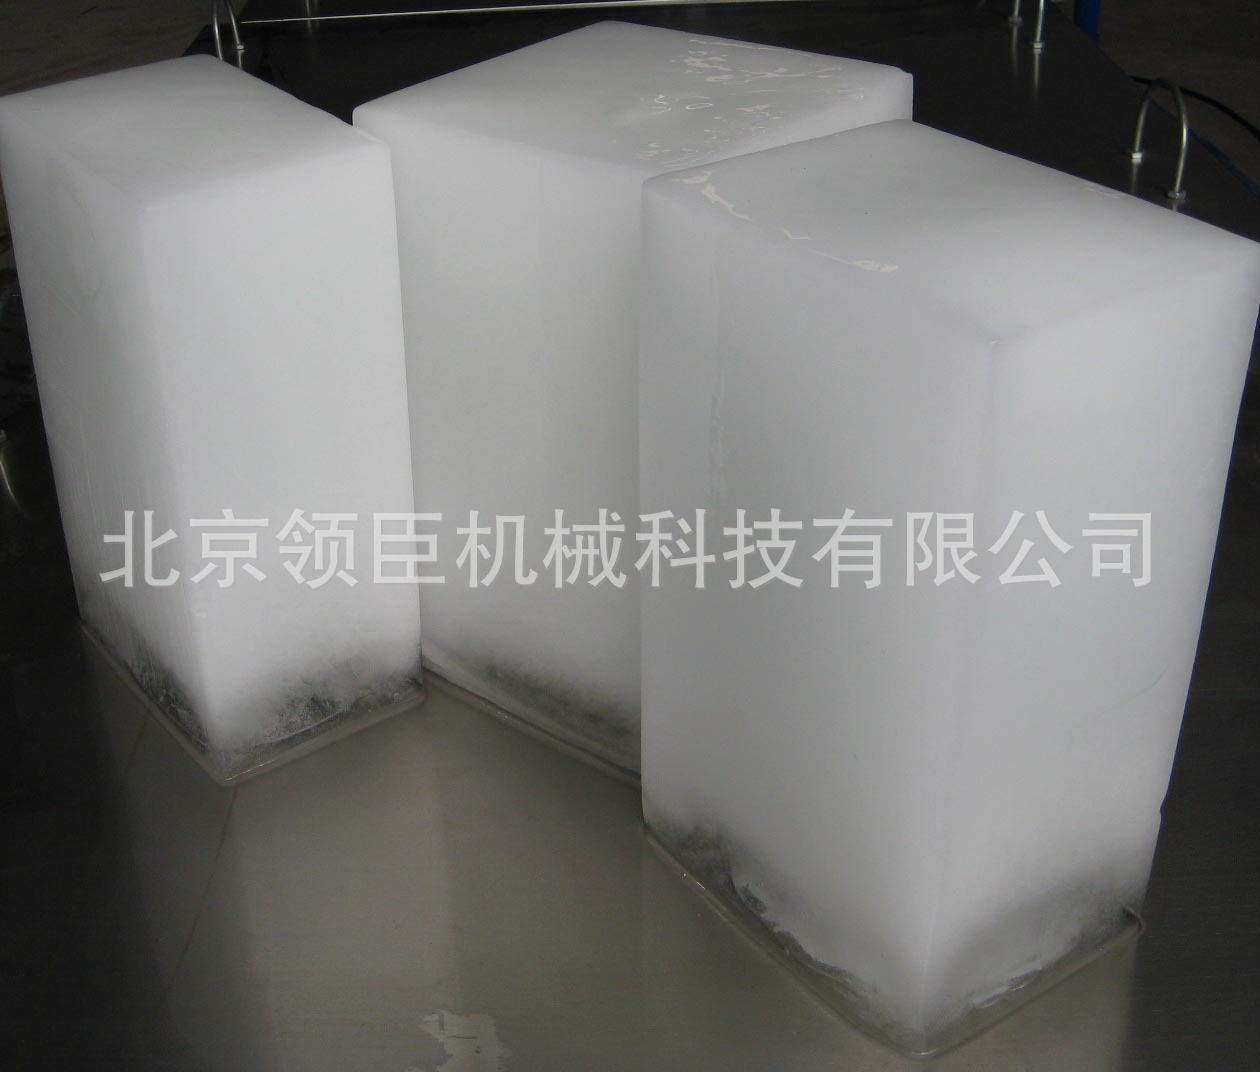 【现货块冰机】北京日产*吨全自动商用小型冰砖机块冰机厂家直销 